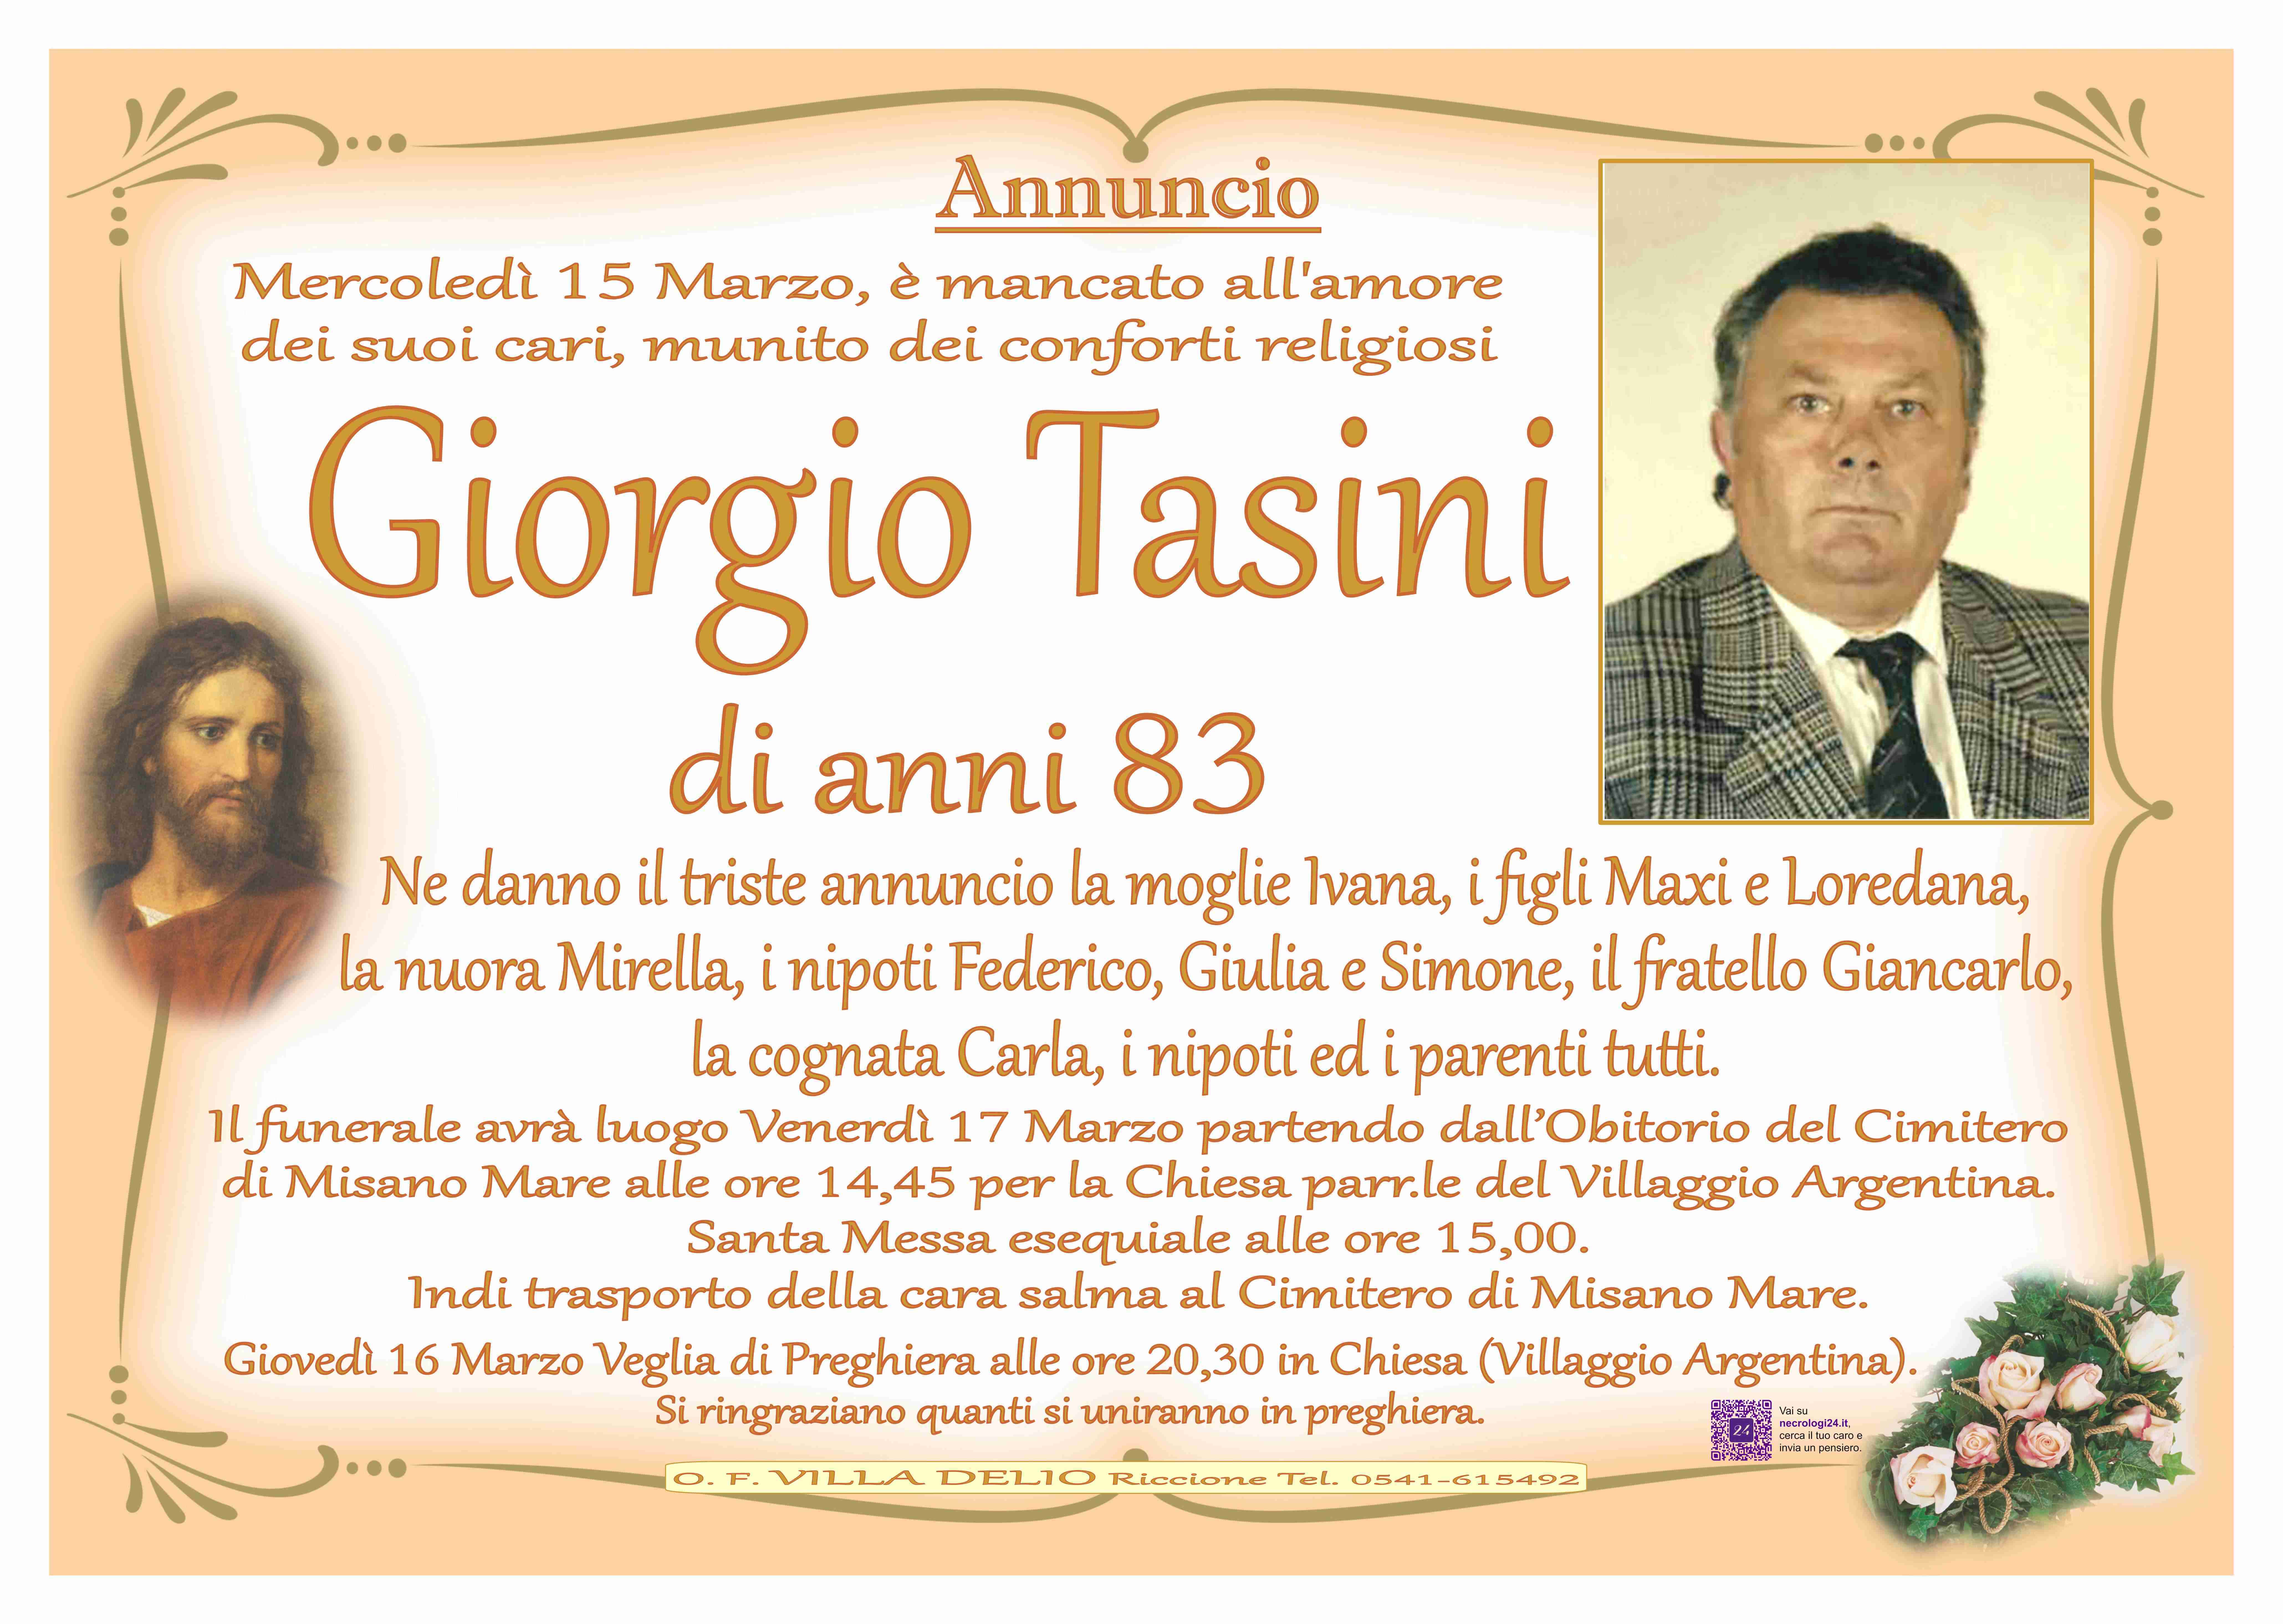 Giorgio Tasini